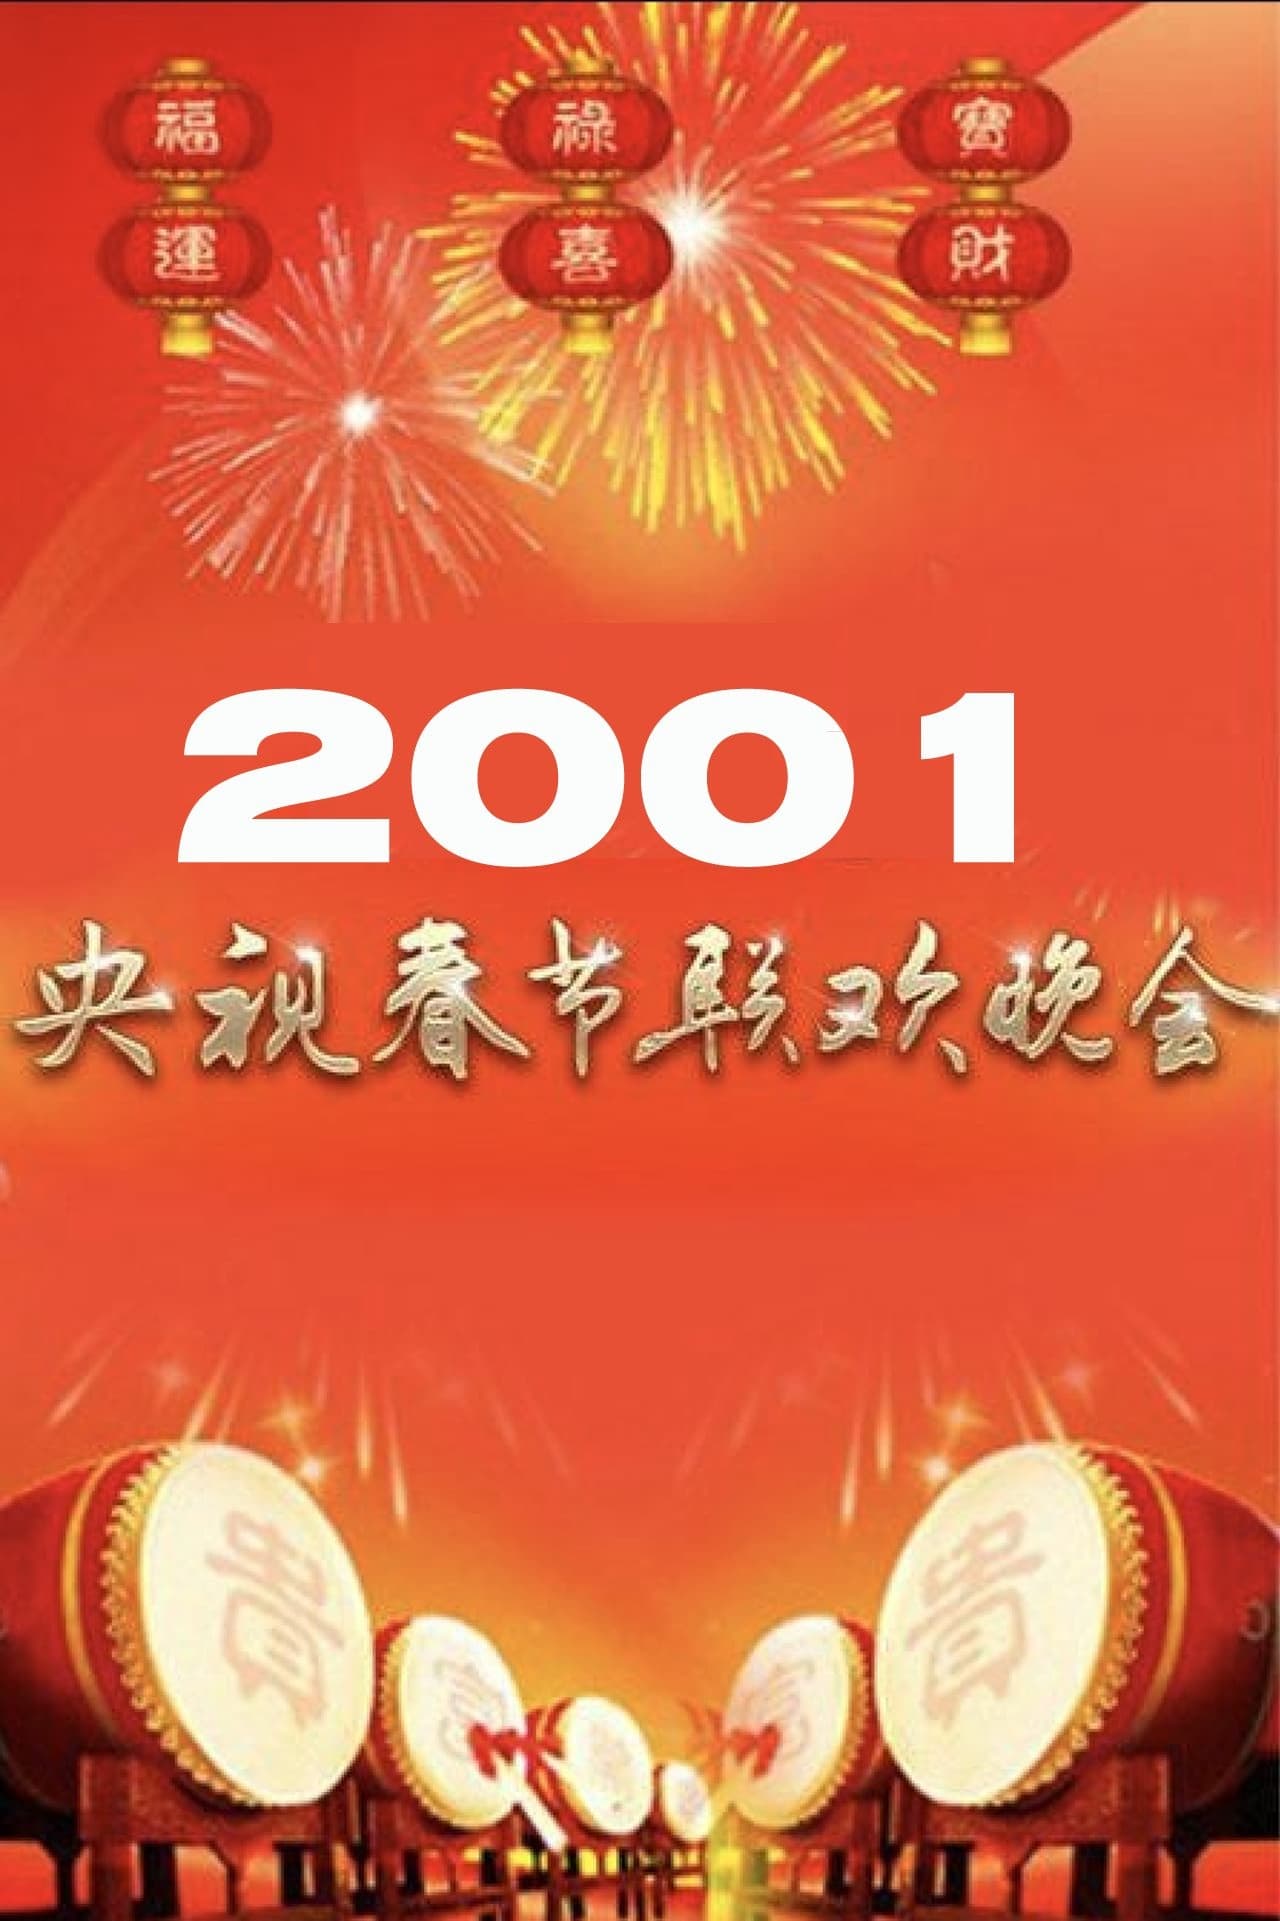 2001年中央广播电视总台春节联欢晚会